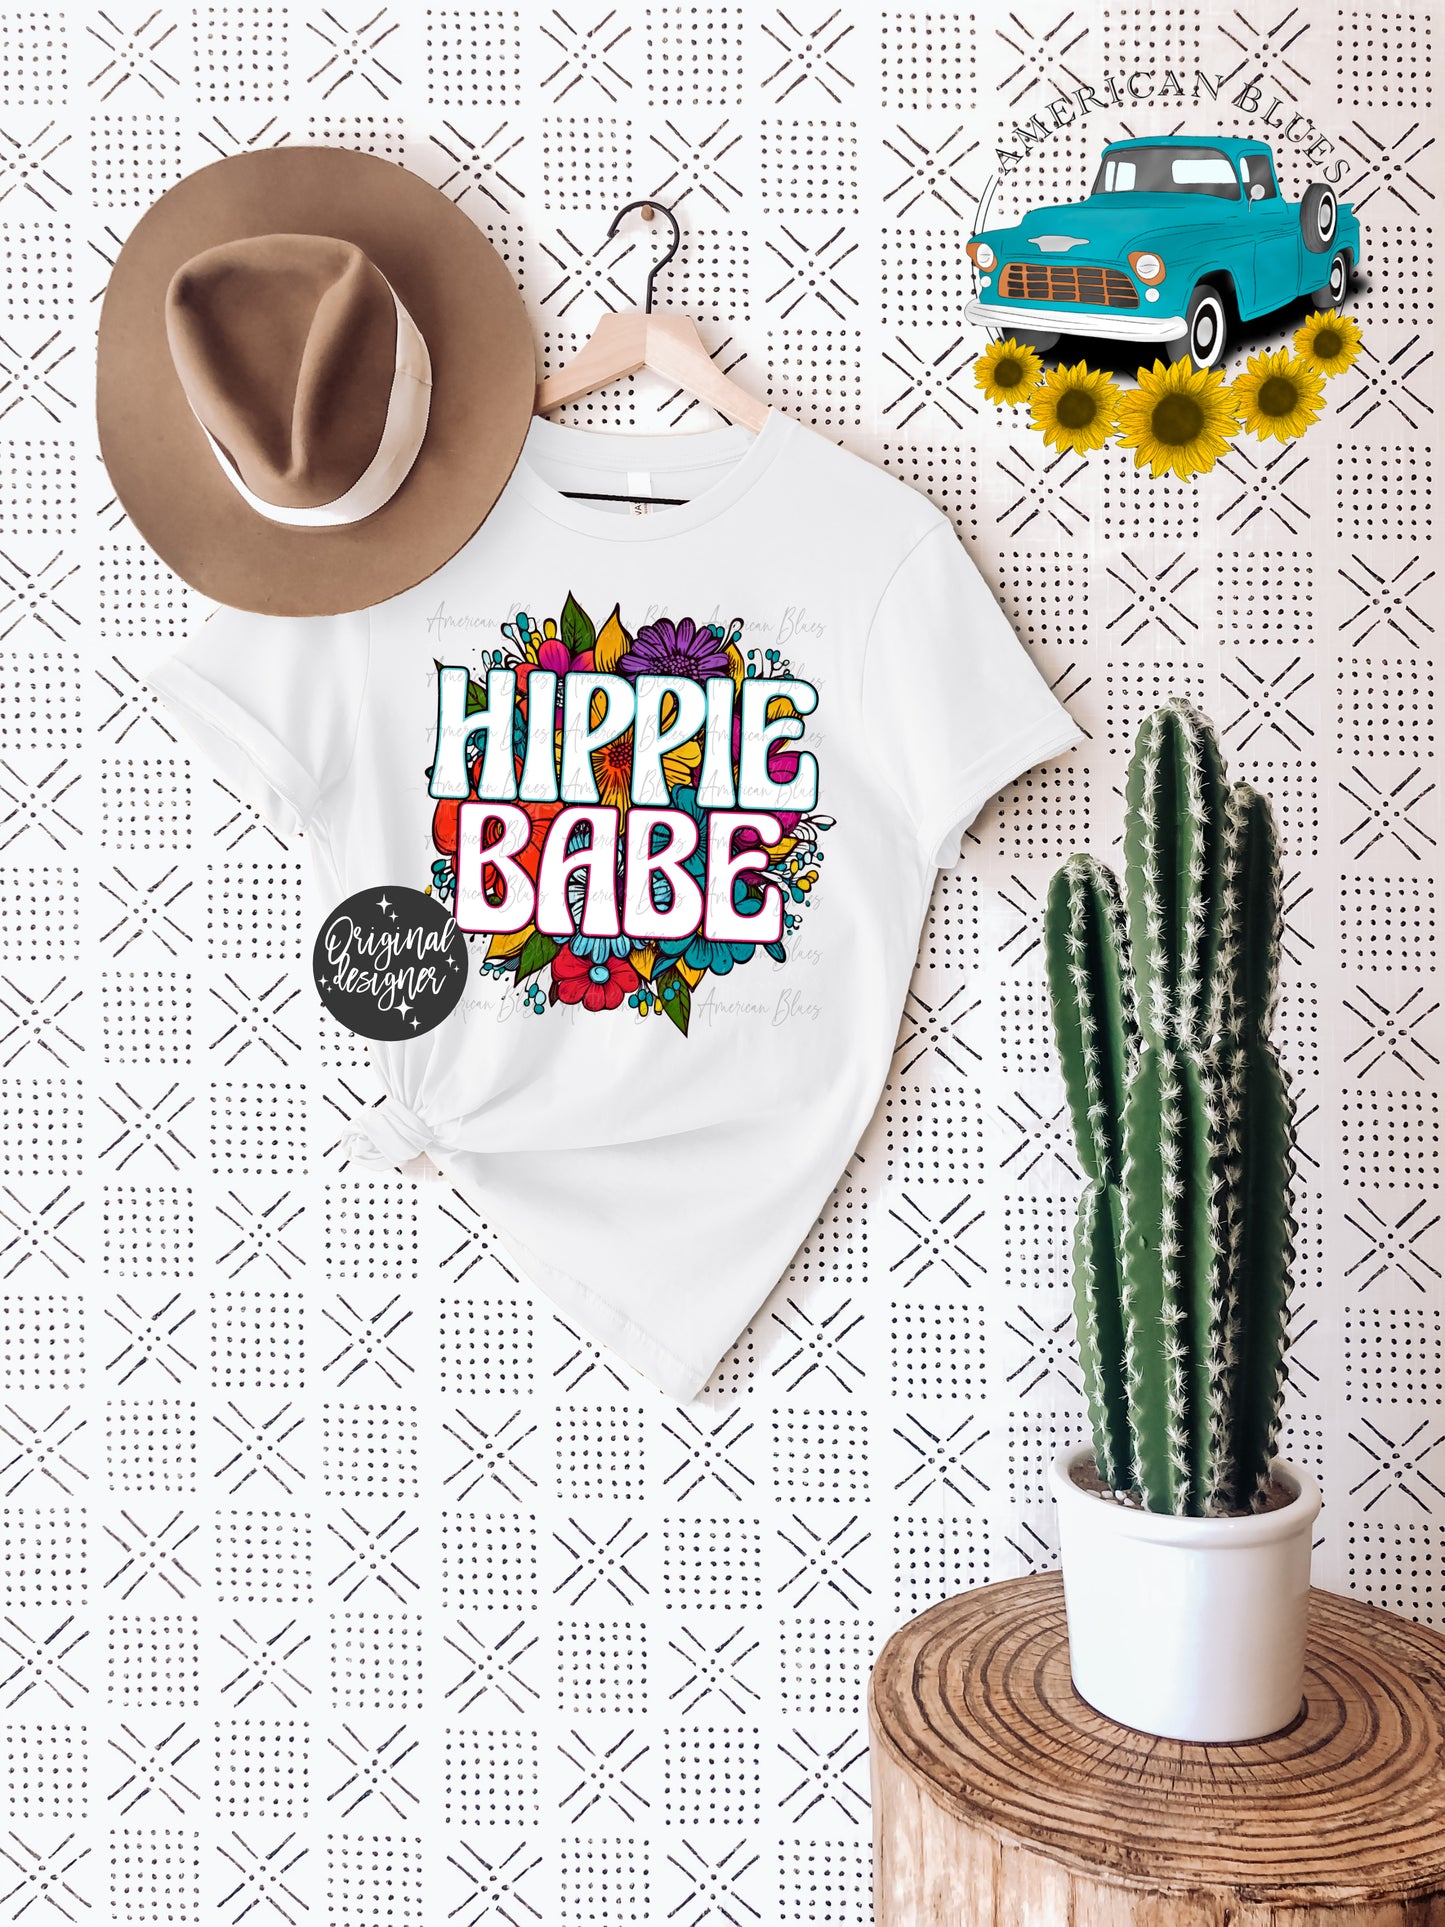 Hippie Babe